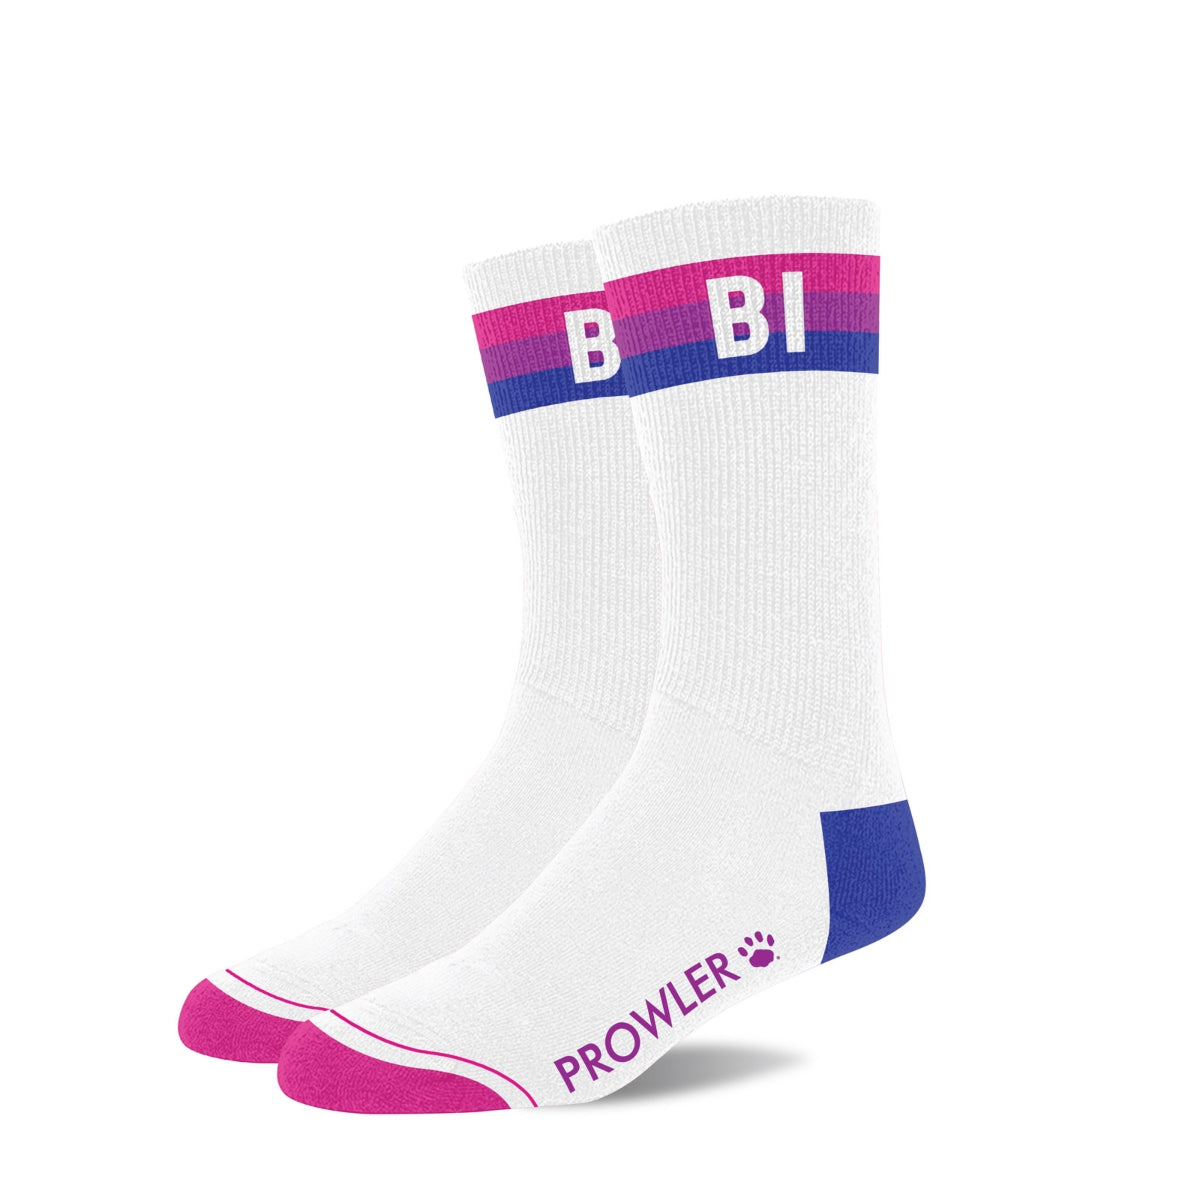 Prowler Bi Socks (8276662812911)